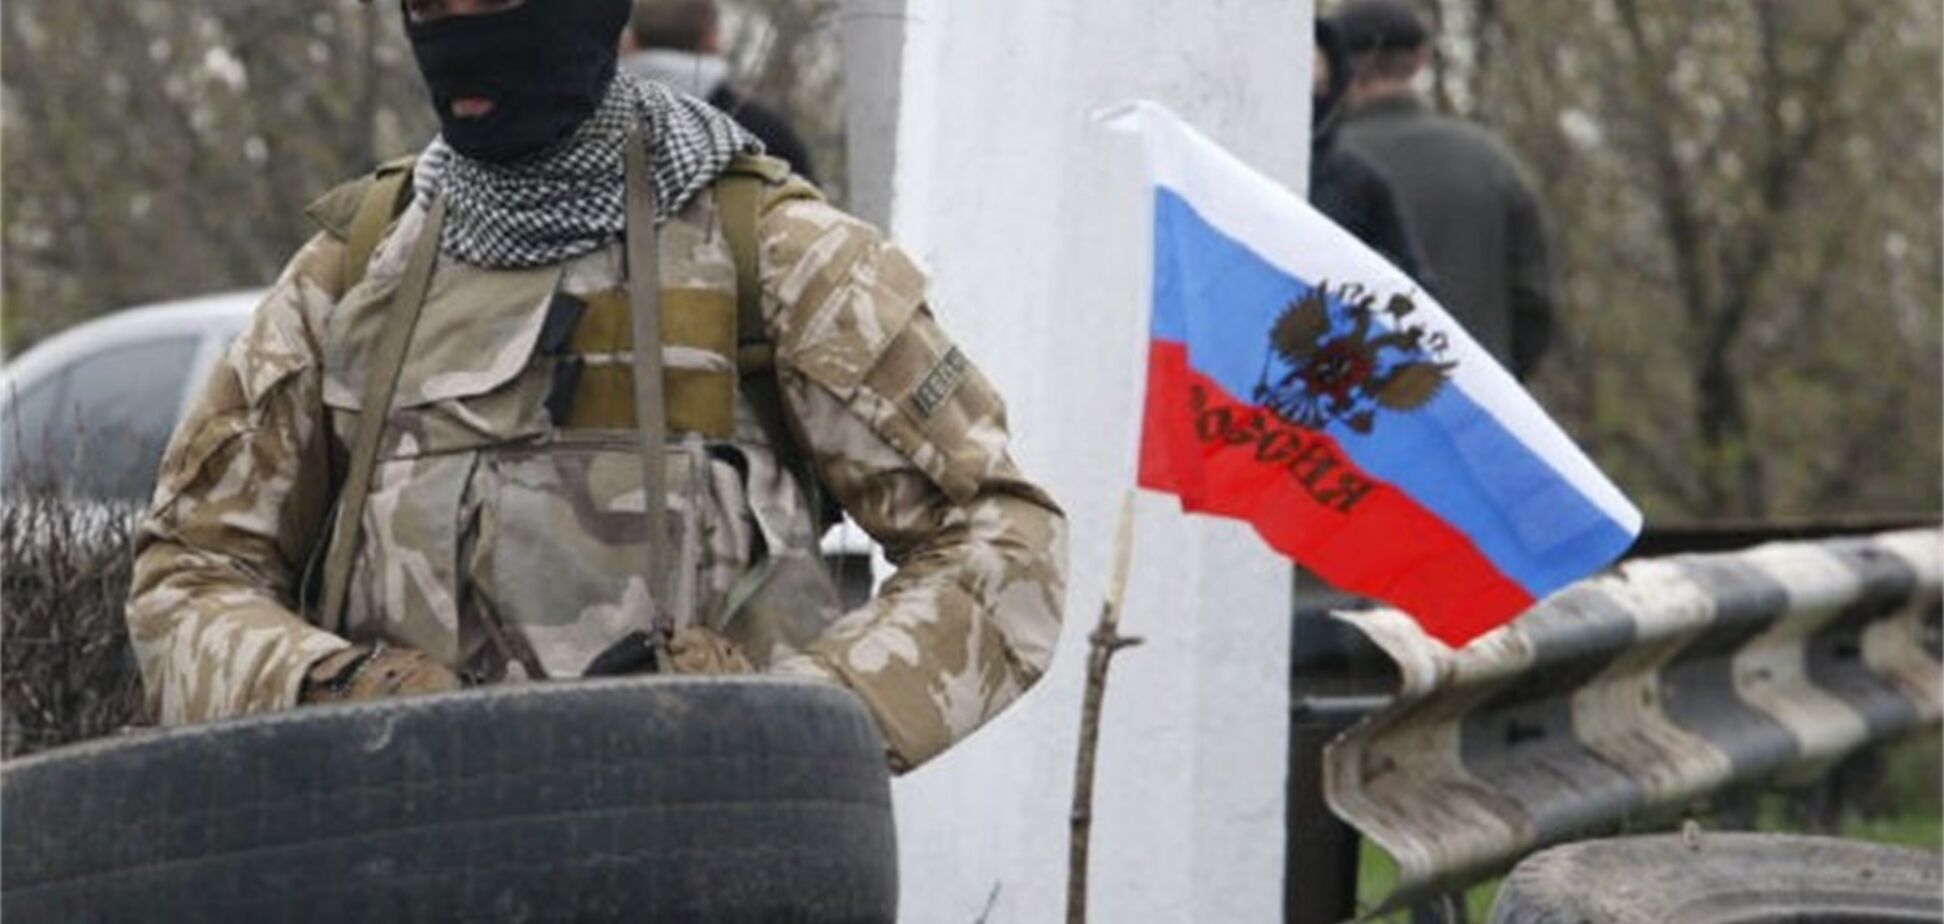 Deutsche Welle написала о 'гражданской войне' в Украине: МИД отреагировал